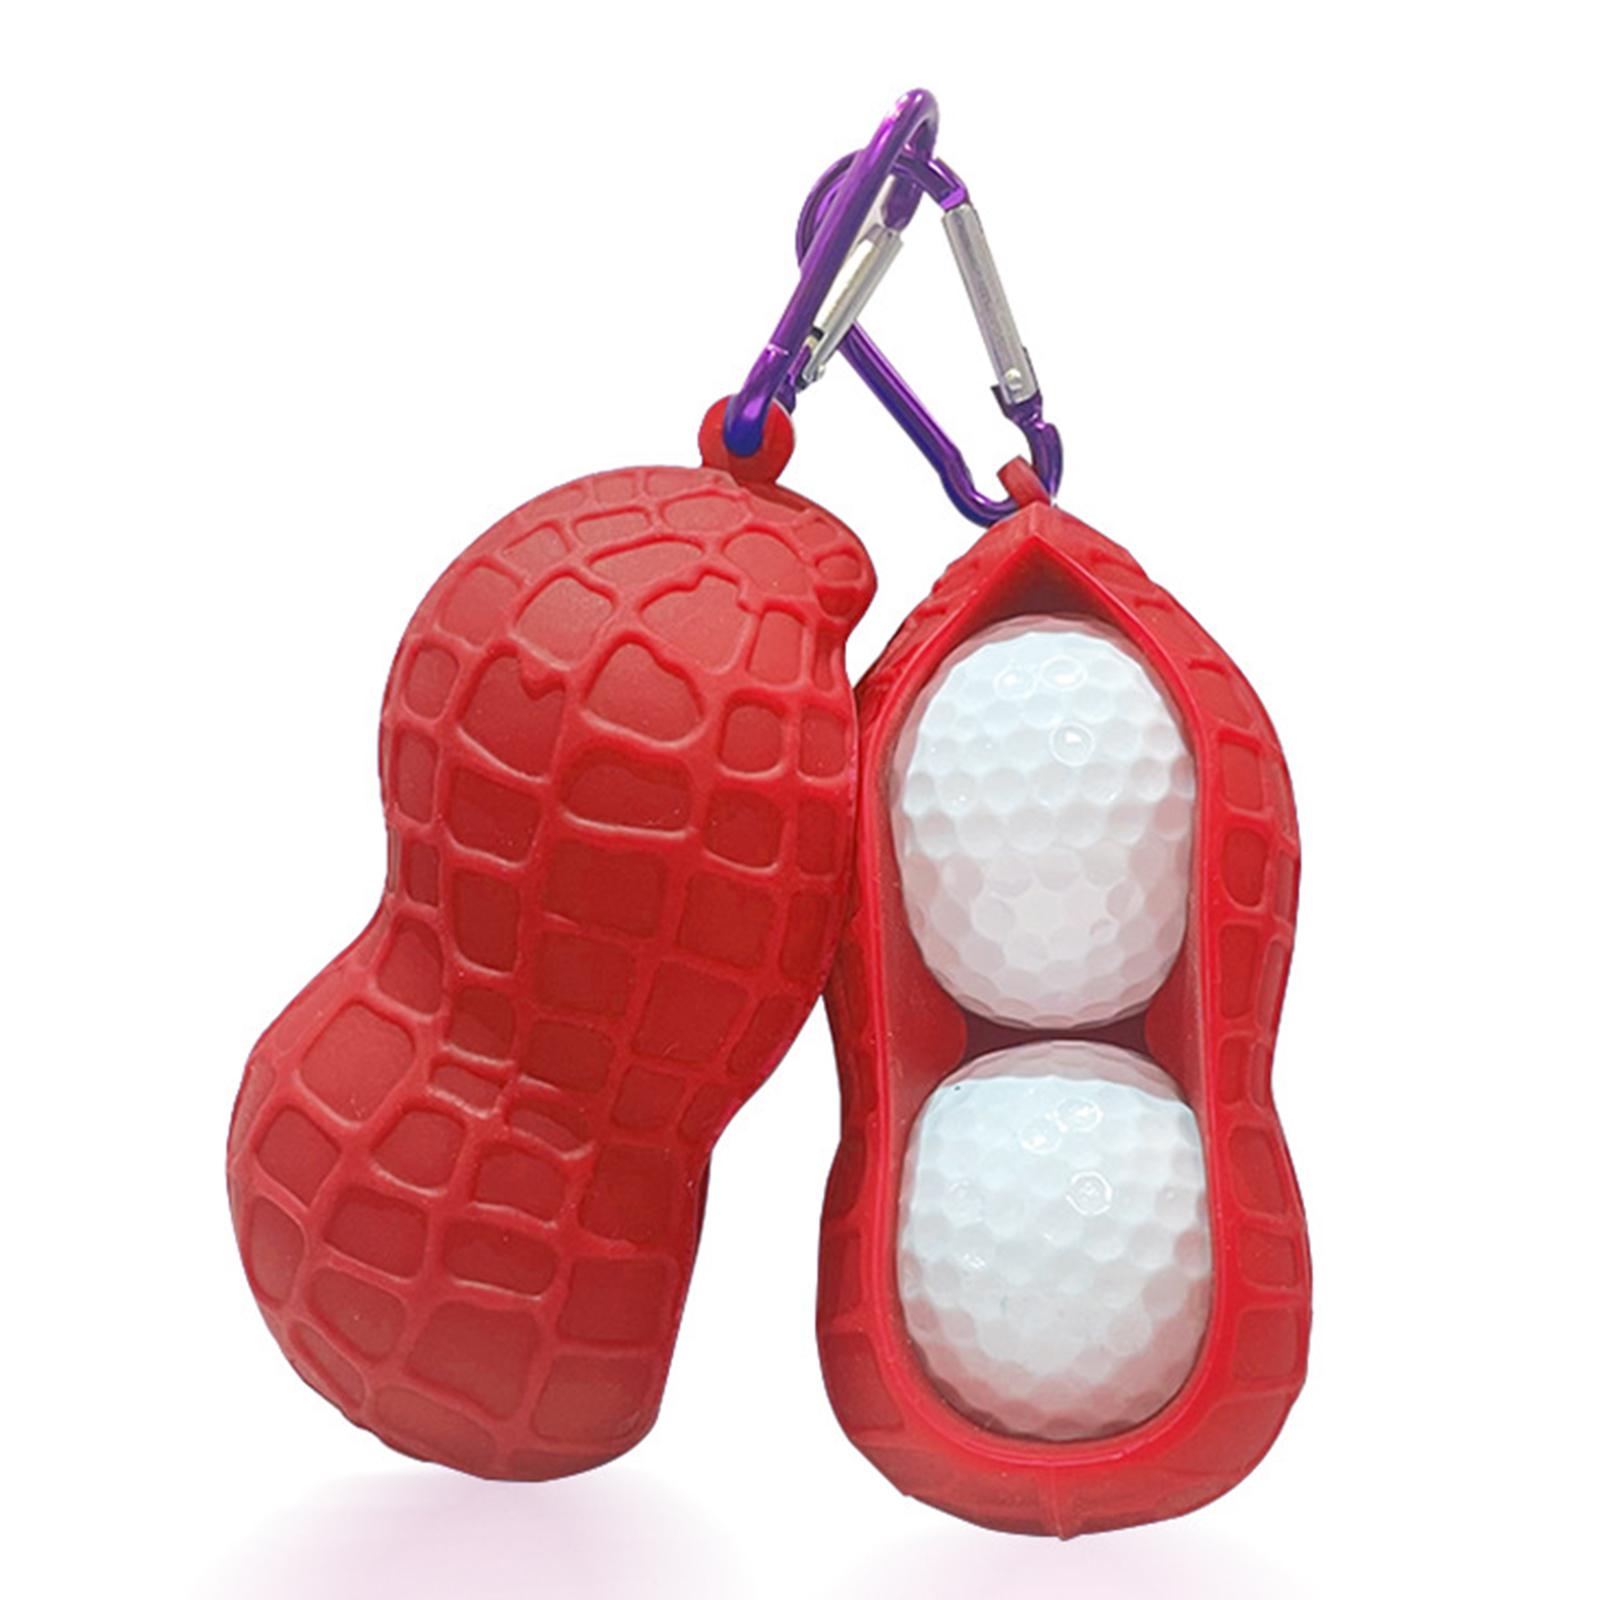 Golf Ball Holder Bag Carrier Sleeve Carry Pouch Men Women Red